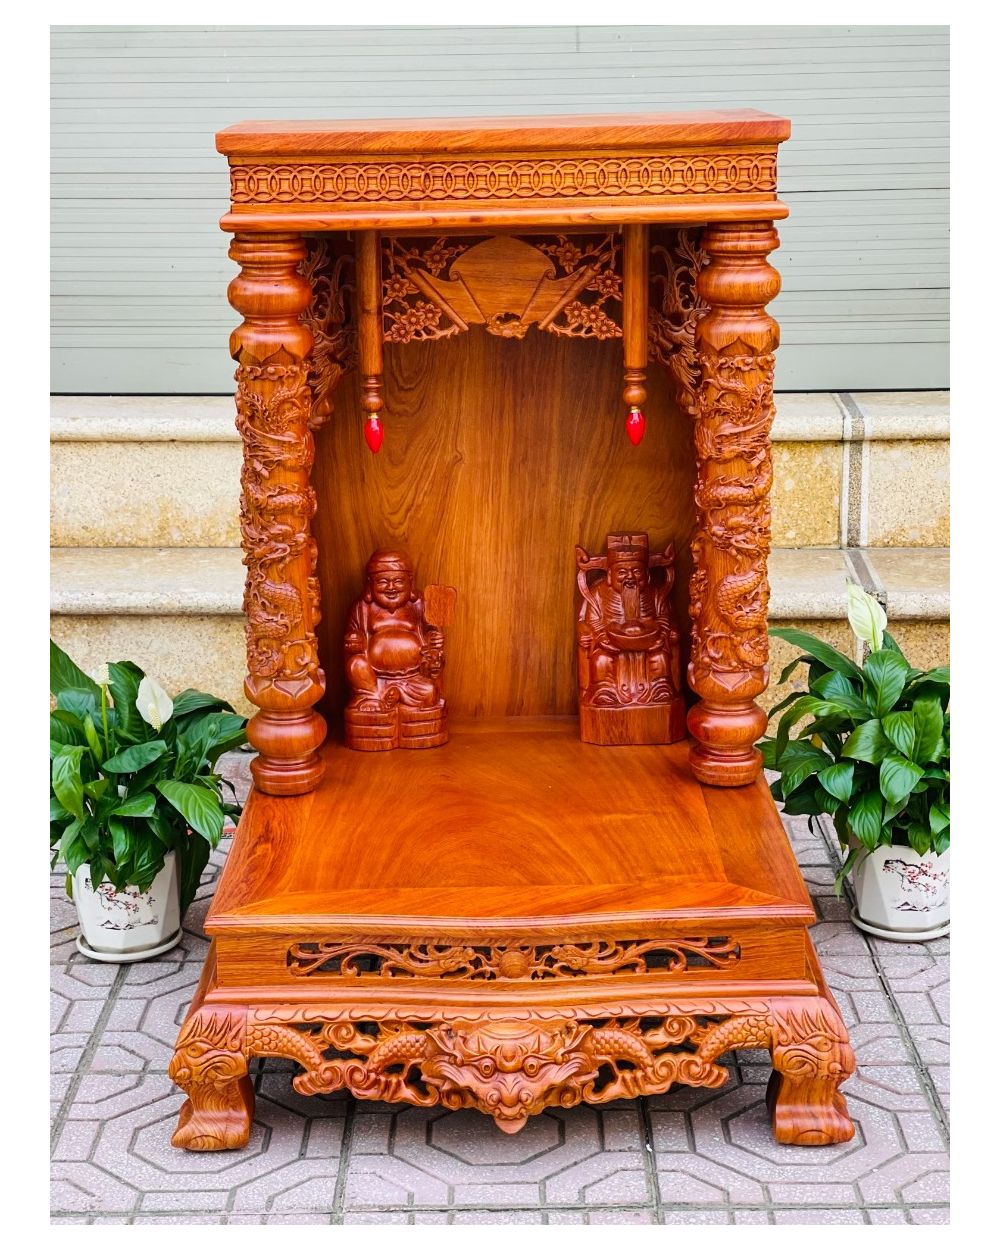 Mô hình bàn thờ ông địa thần tài mini đồ trang trí bàn làm việc dành riêng  cho dân văn phòng chạy sale, áp số, kpi | Lazada.vn